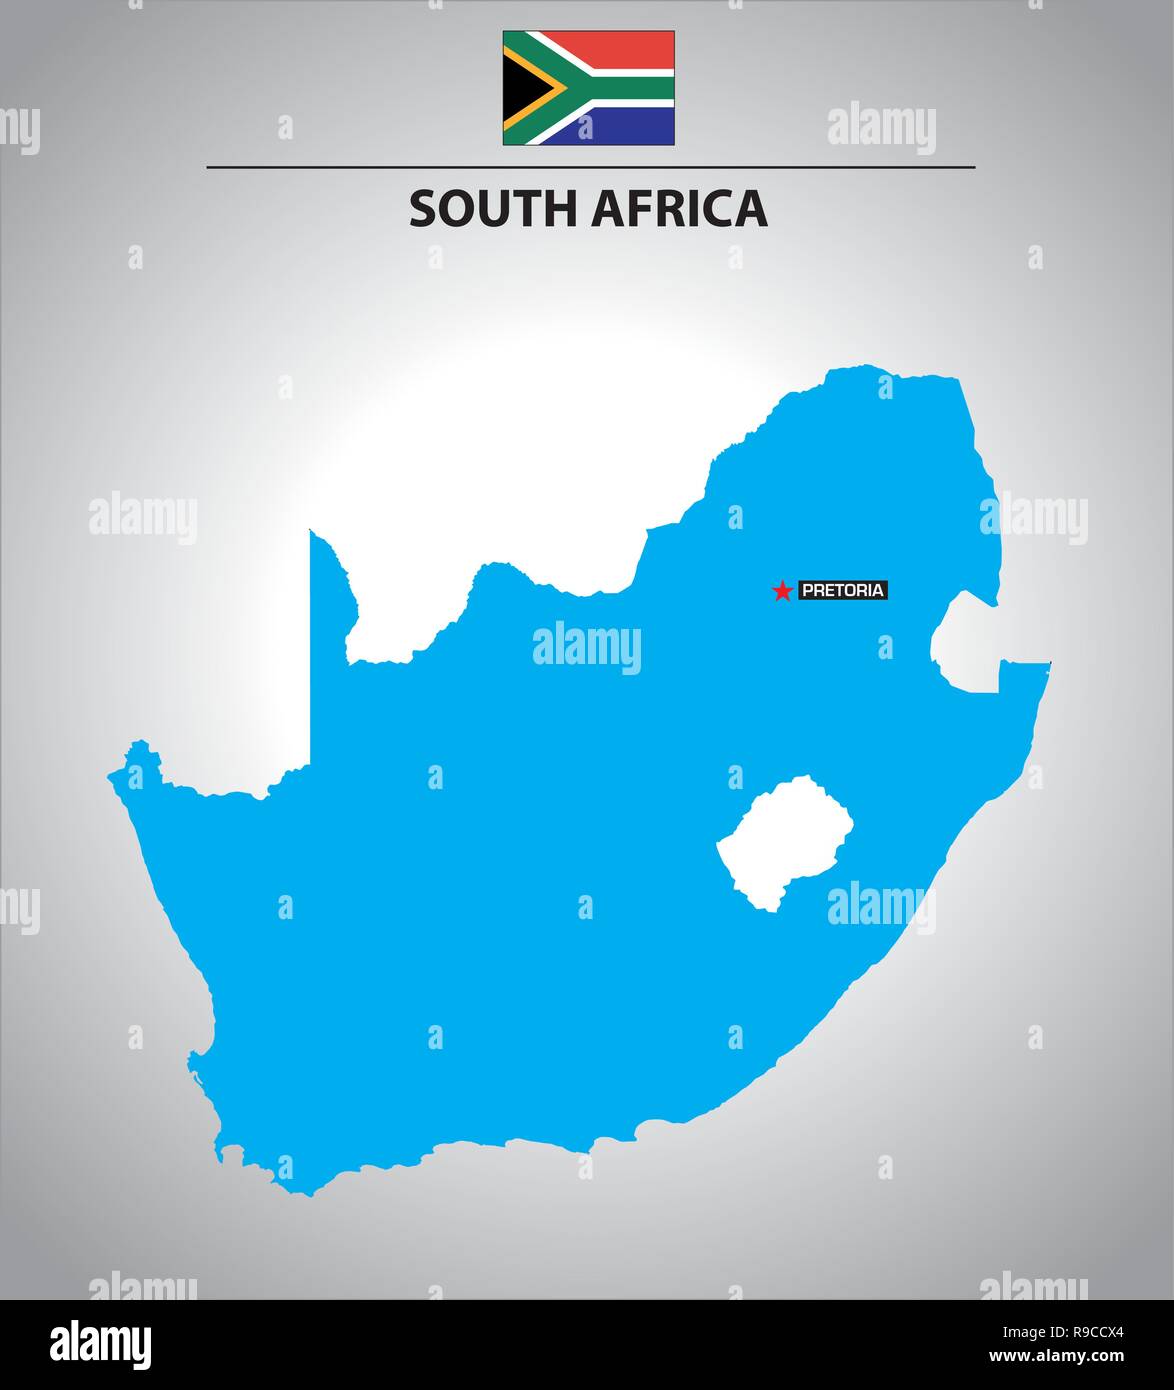 Einfachen Vektor kontur Karte von Südafrika mit Fahne Stock Vektor